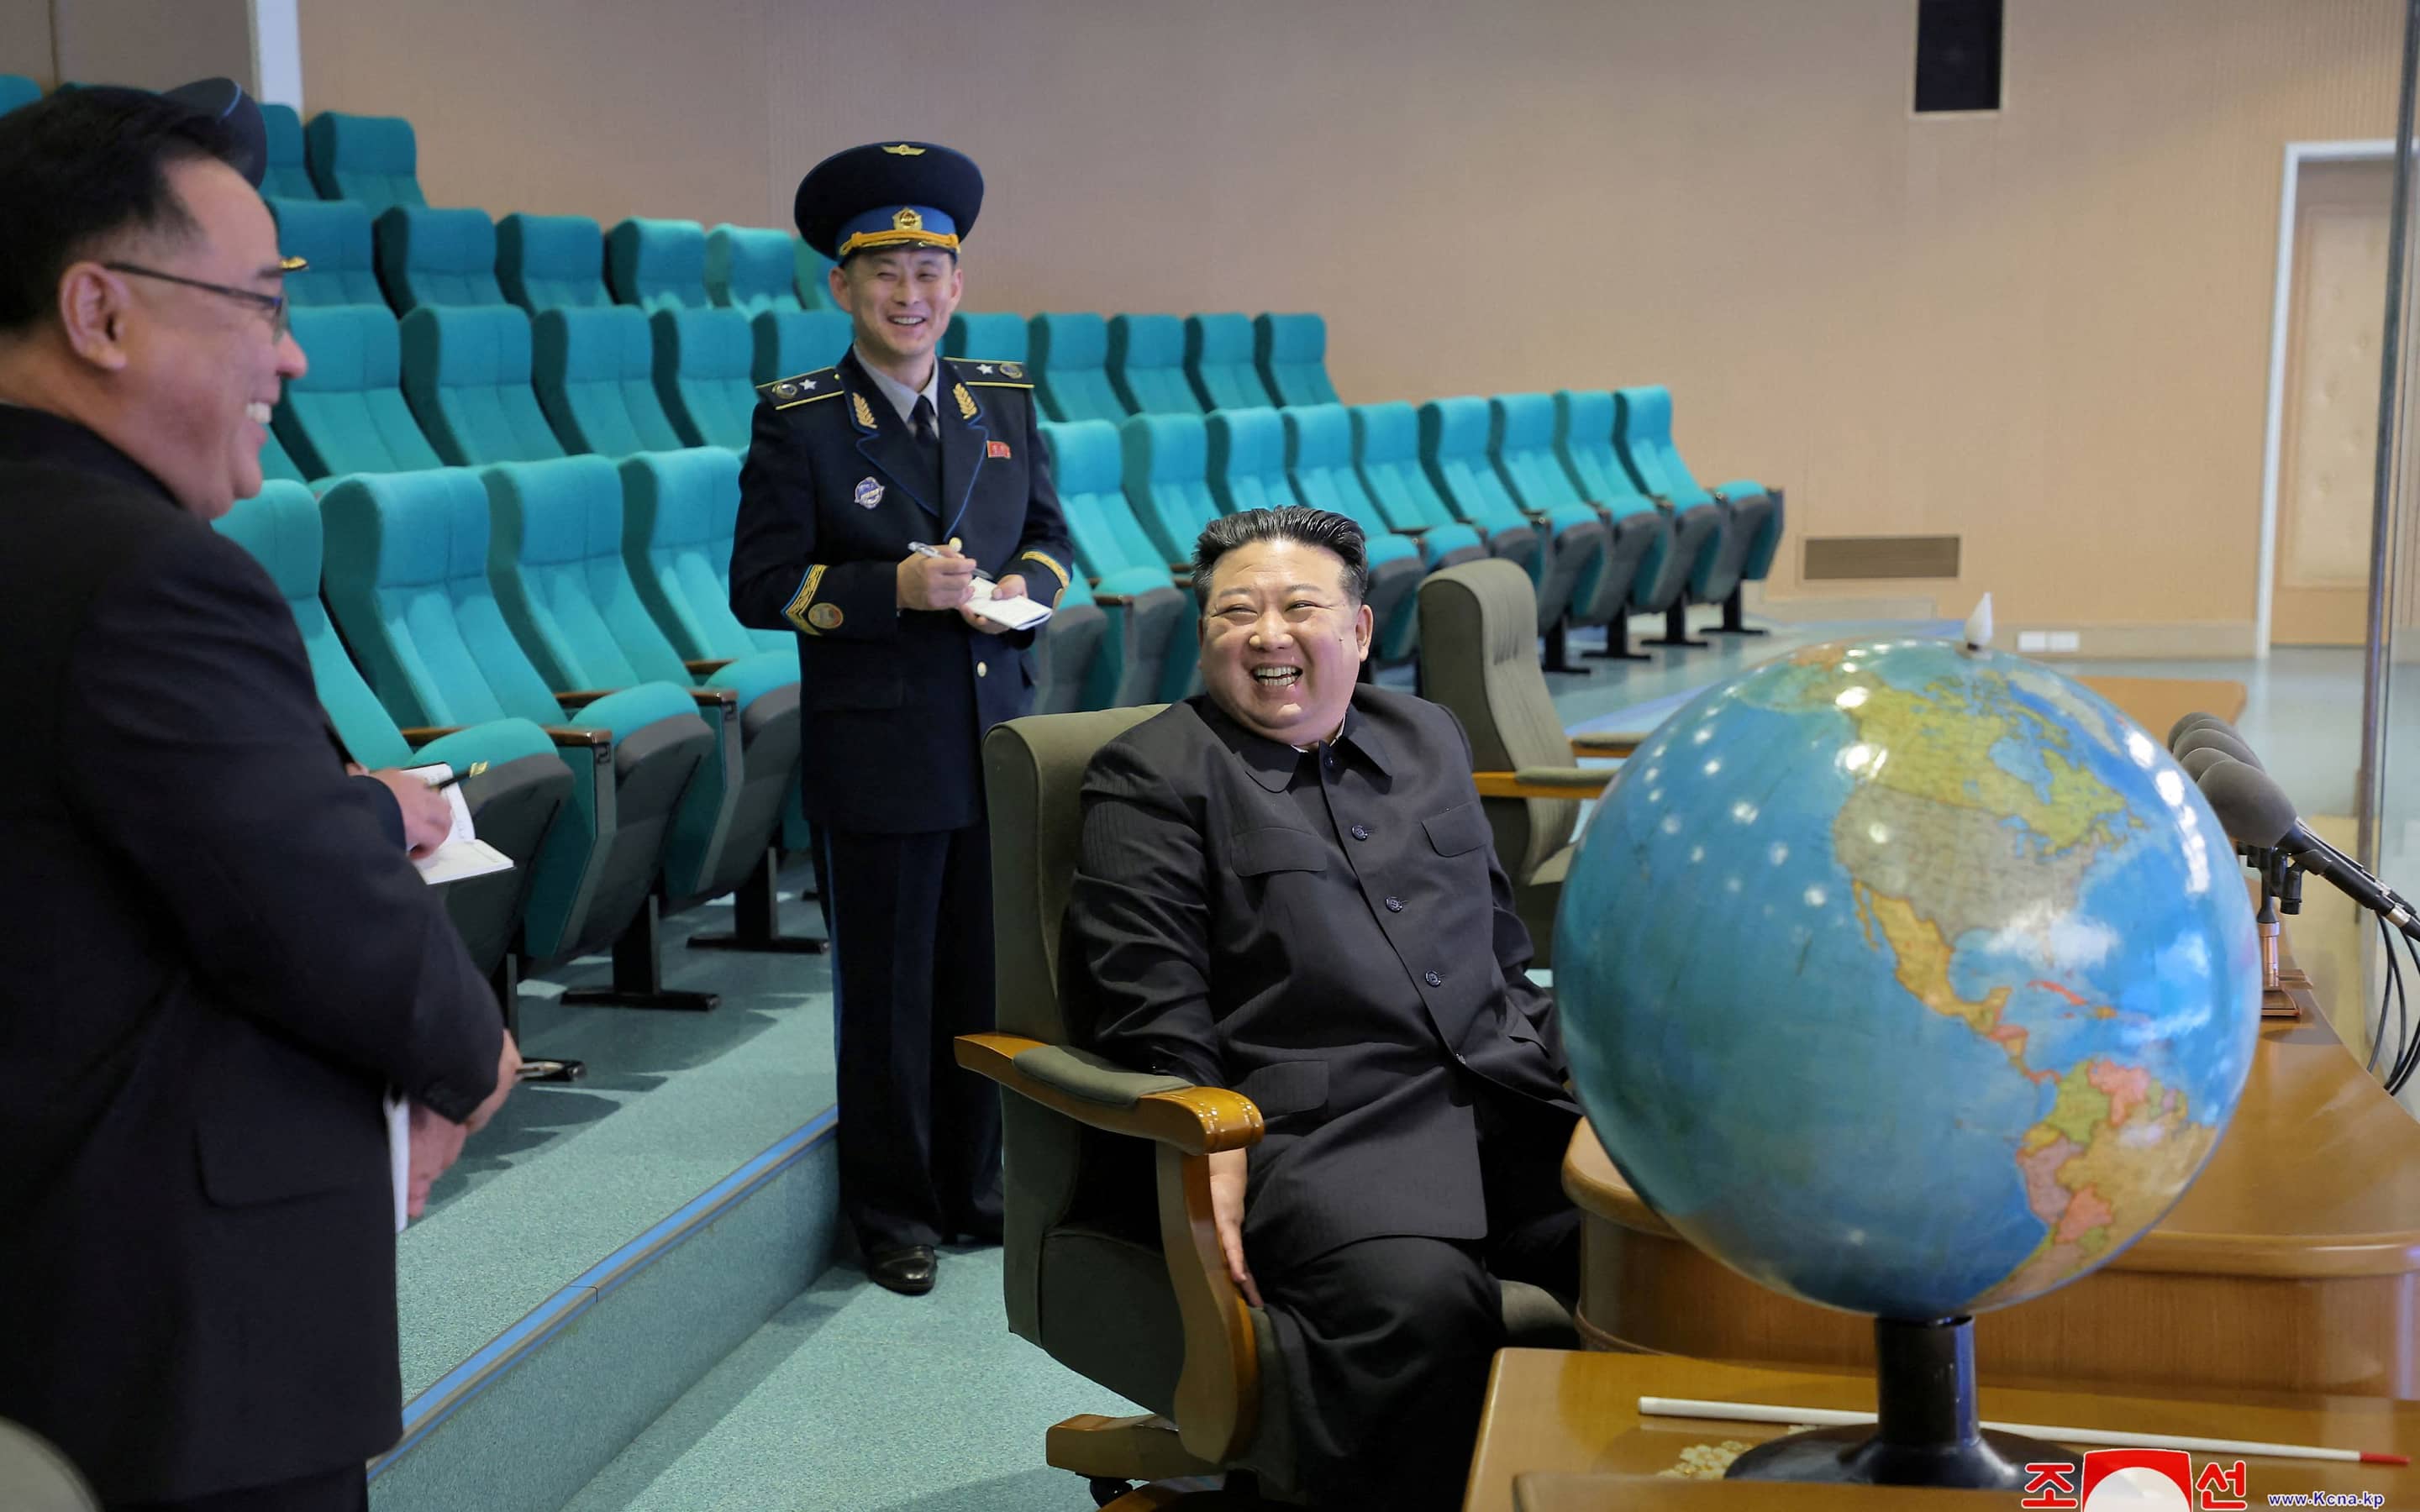 Kim Jong-un vor der Weltkugel: Diese Aufnahme ließ Nordkorea veröffentlichen, nachdem die Nachricht verbreitet wurde, dass das Land einen Satellit erfolgreich ins All gebracht haben soll.